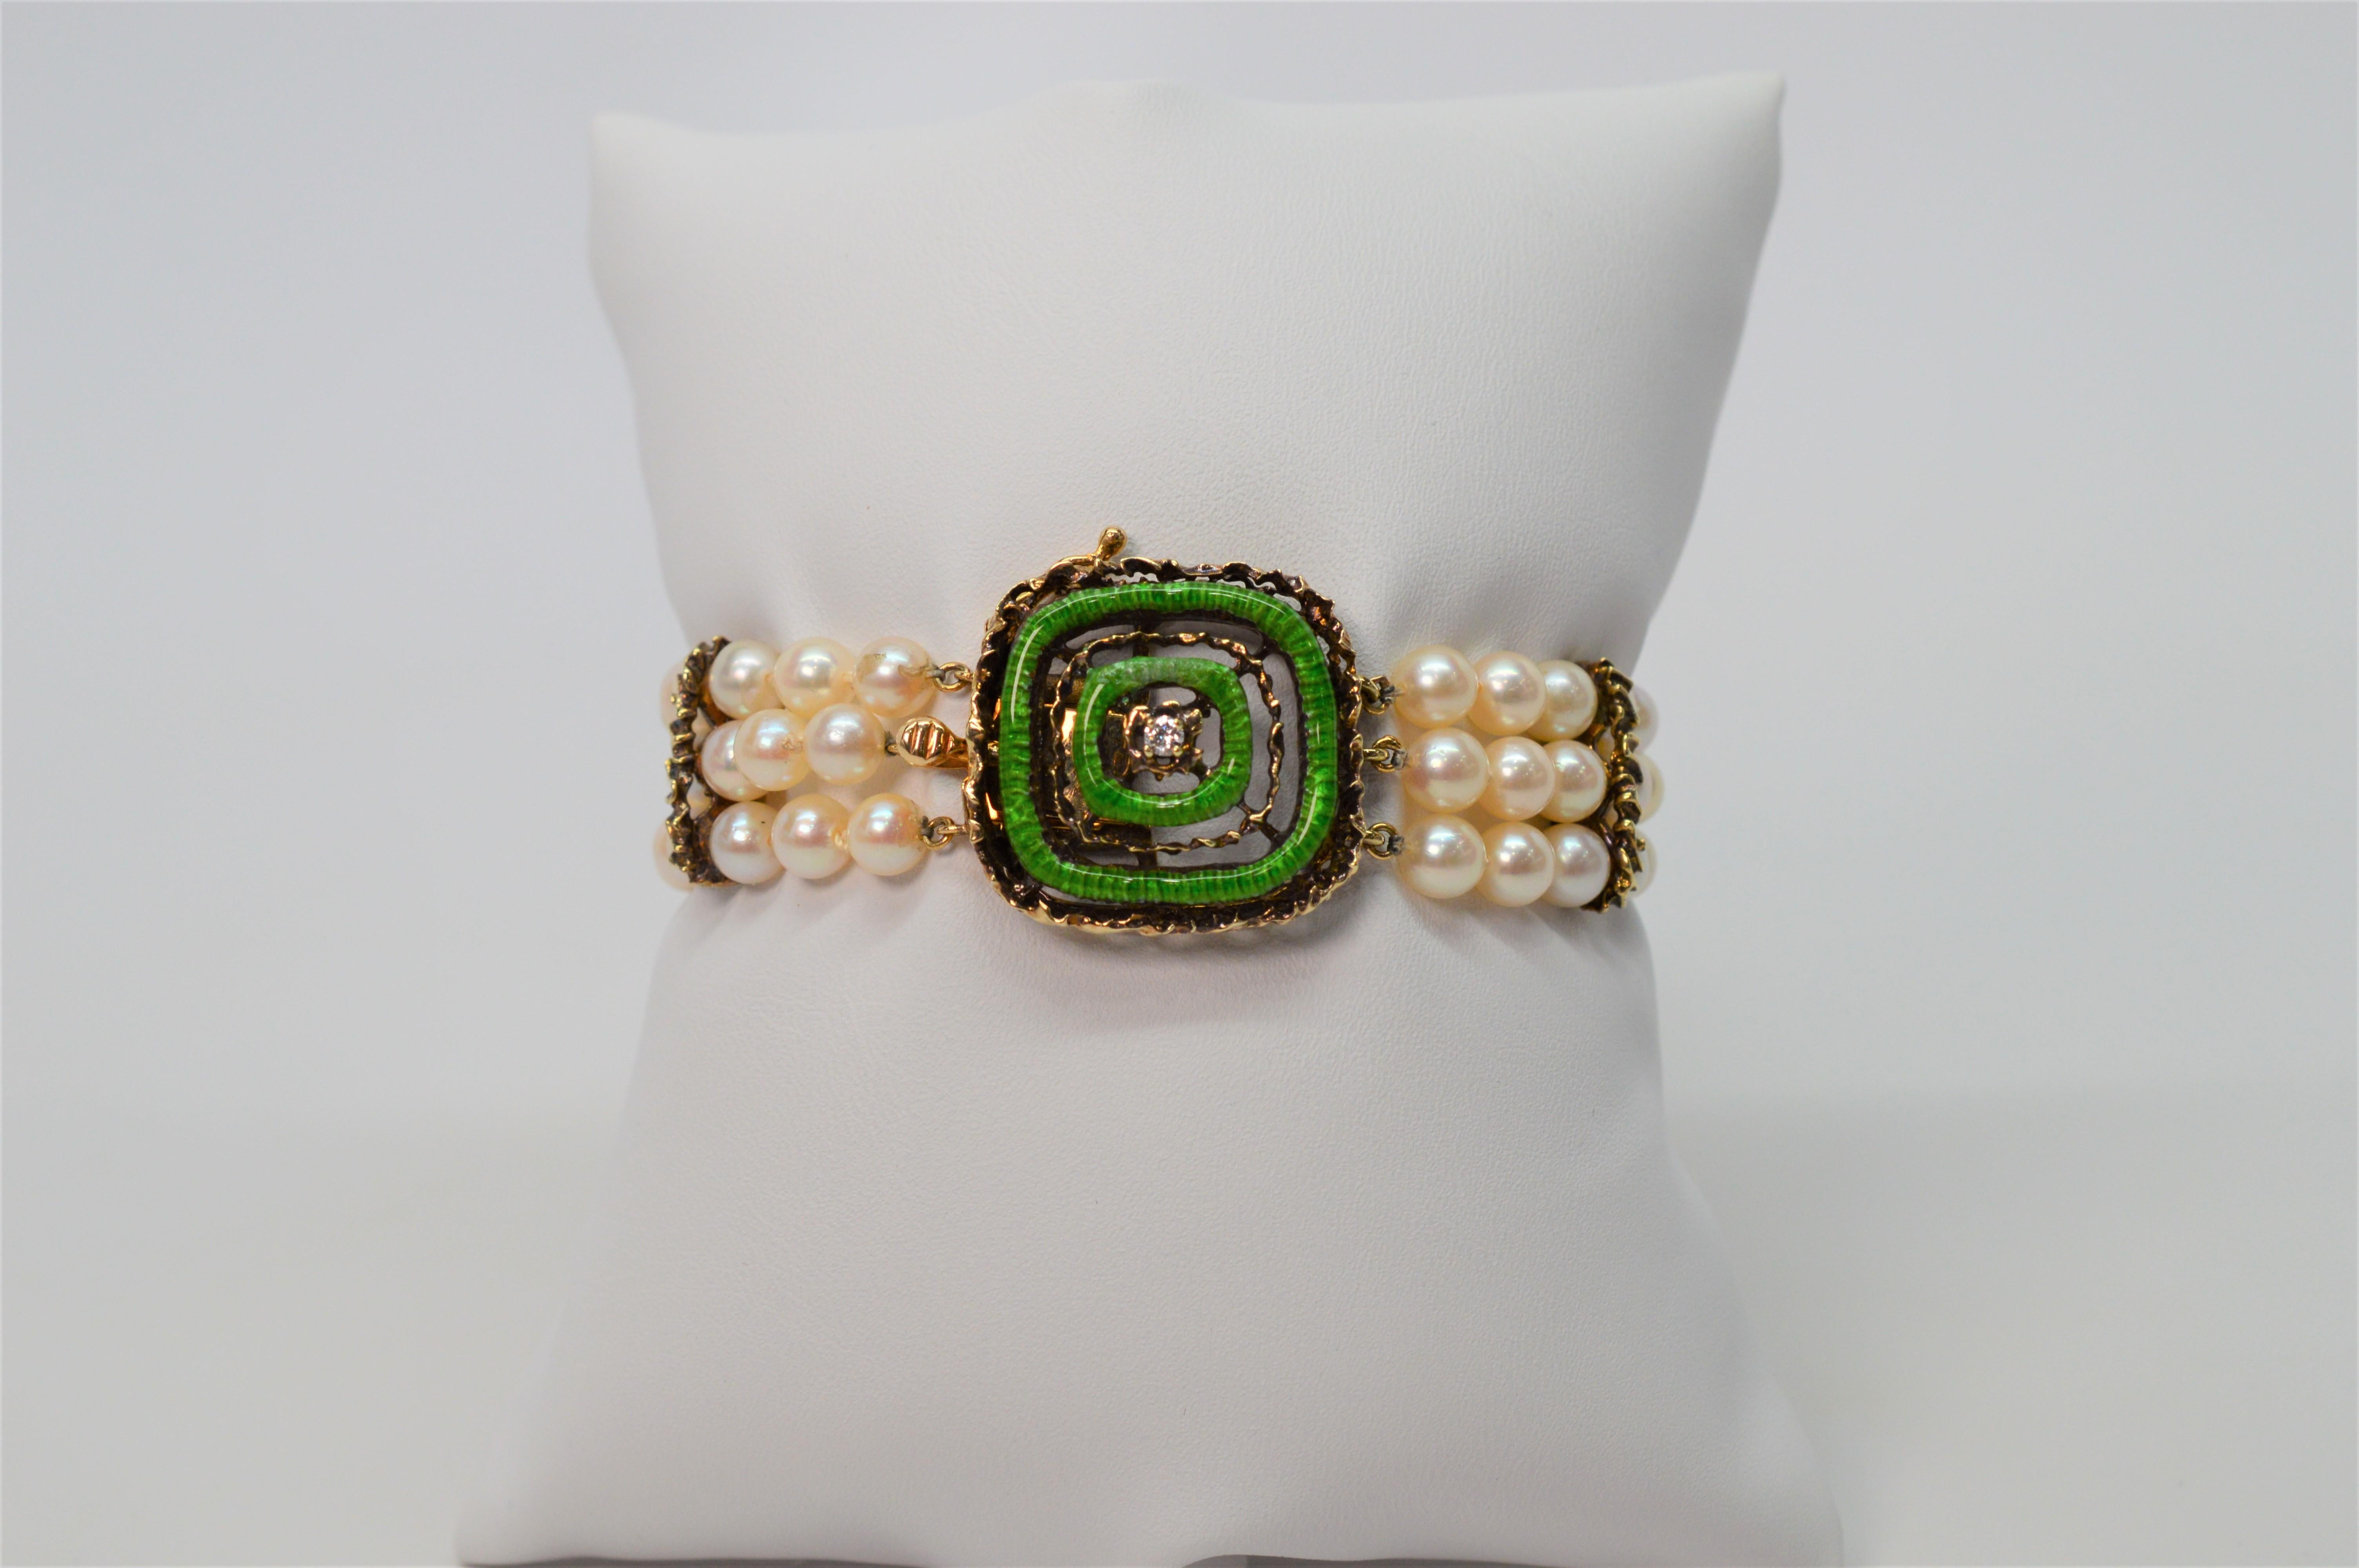 Dieses dreifach geflochtene Armband ist von skurriler Natur und  ist eine eklektische Mischung aus klassischen AAA-Akoya-Perlen mit rustikalen Akzenten aus 14 Karat Gelbgold und einem ungewöhnlichen Charm aus feiner grüner Emaille mit einem